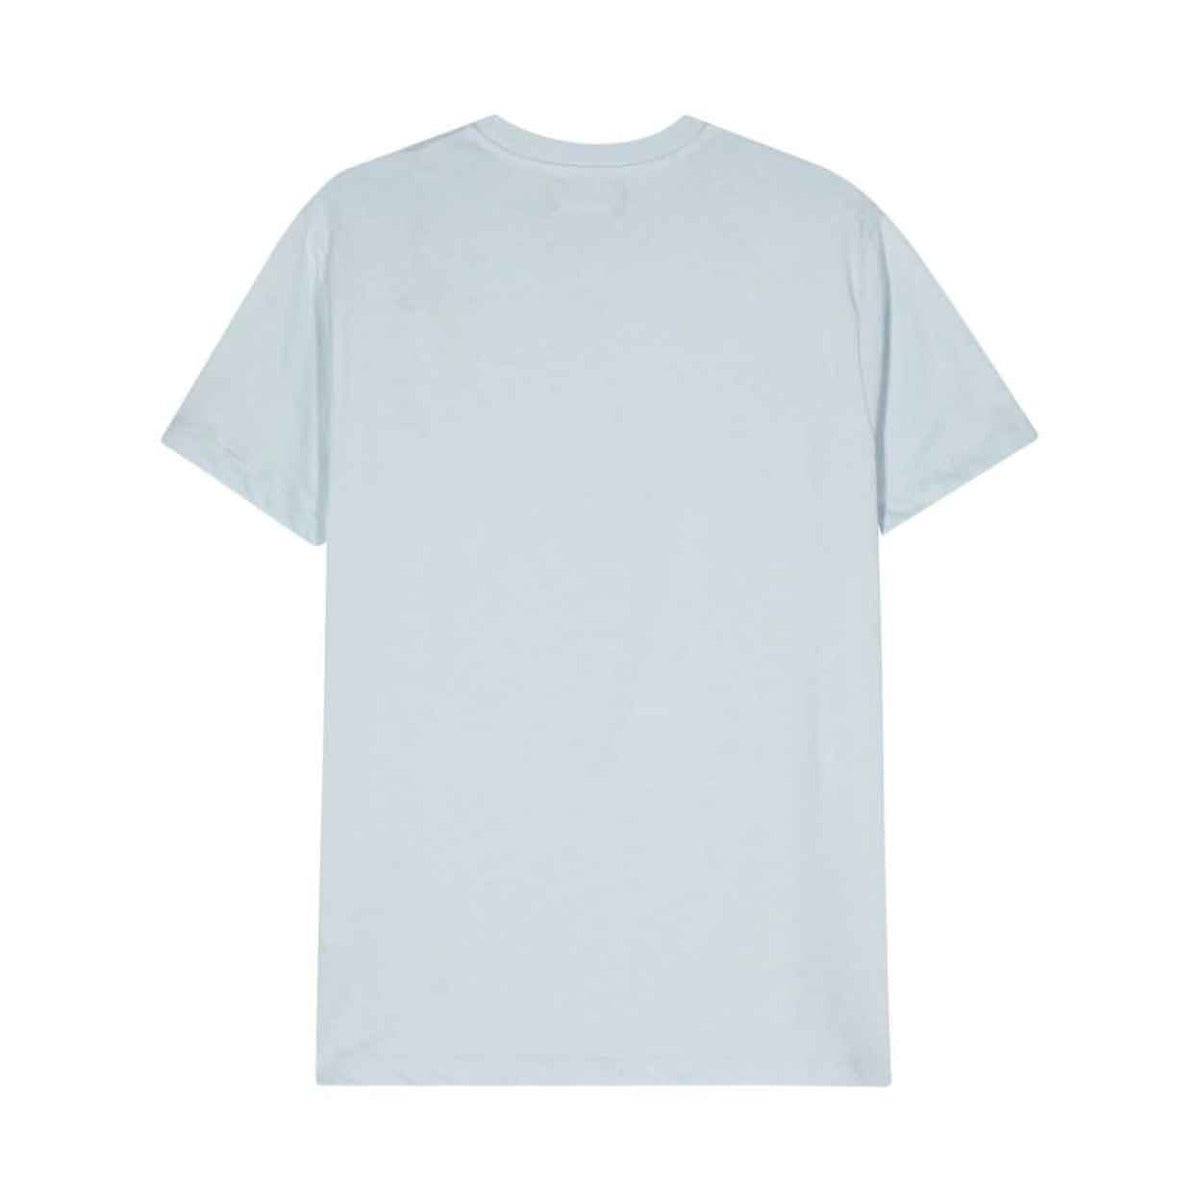 Light Blue Beach Surf Graphic T-shirt Short Sleeve Vilebrequin   